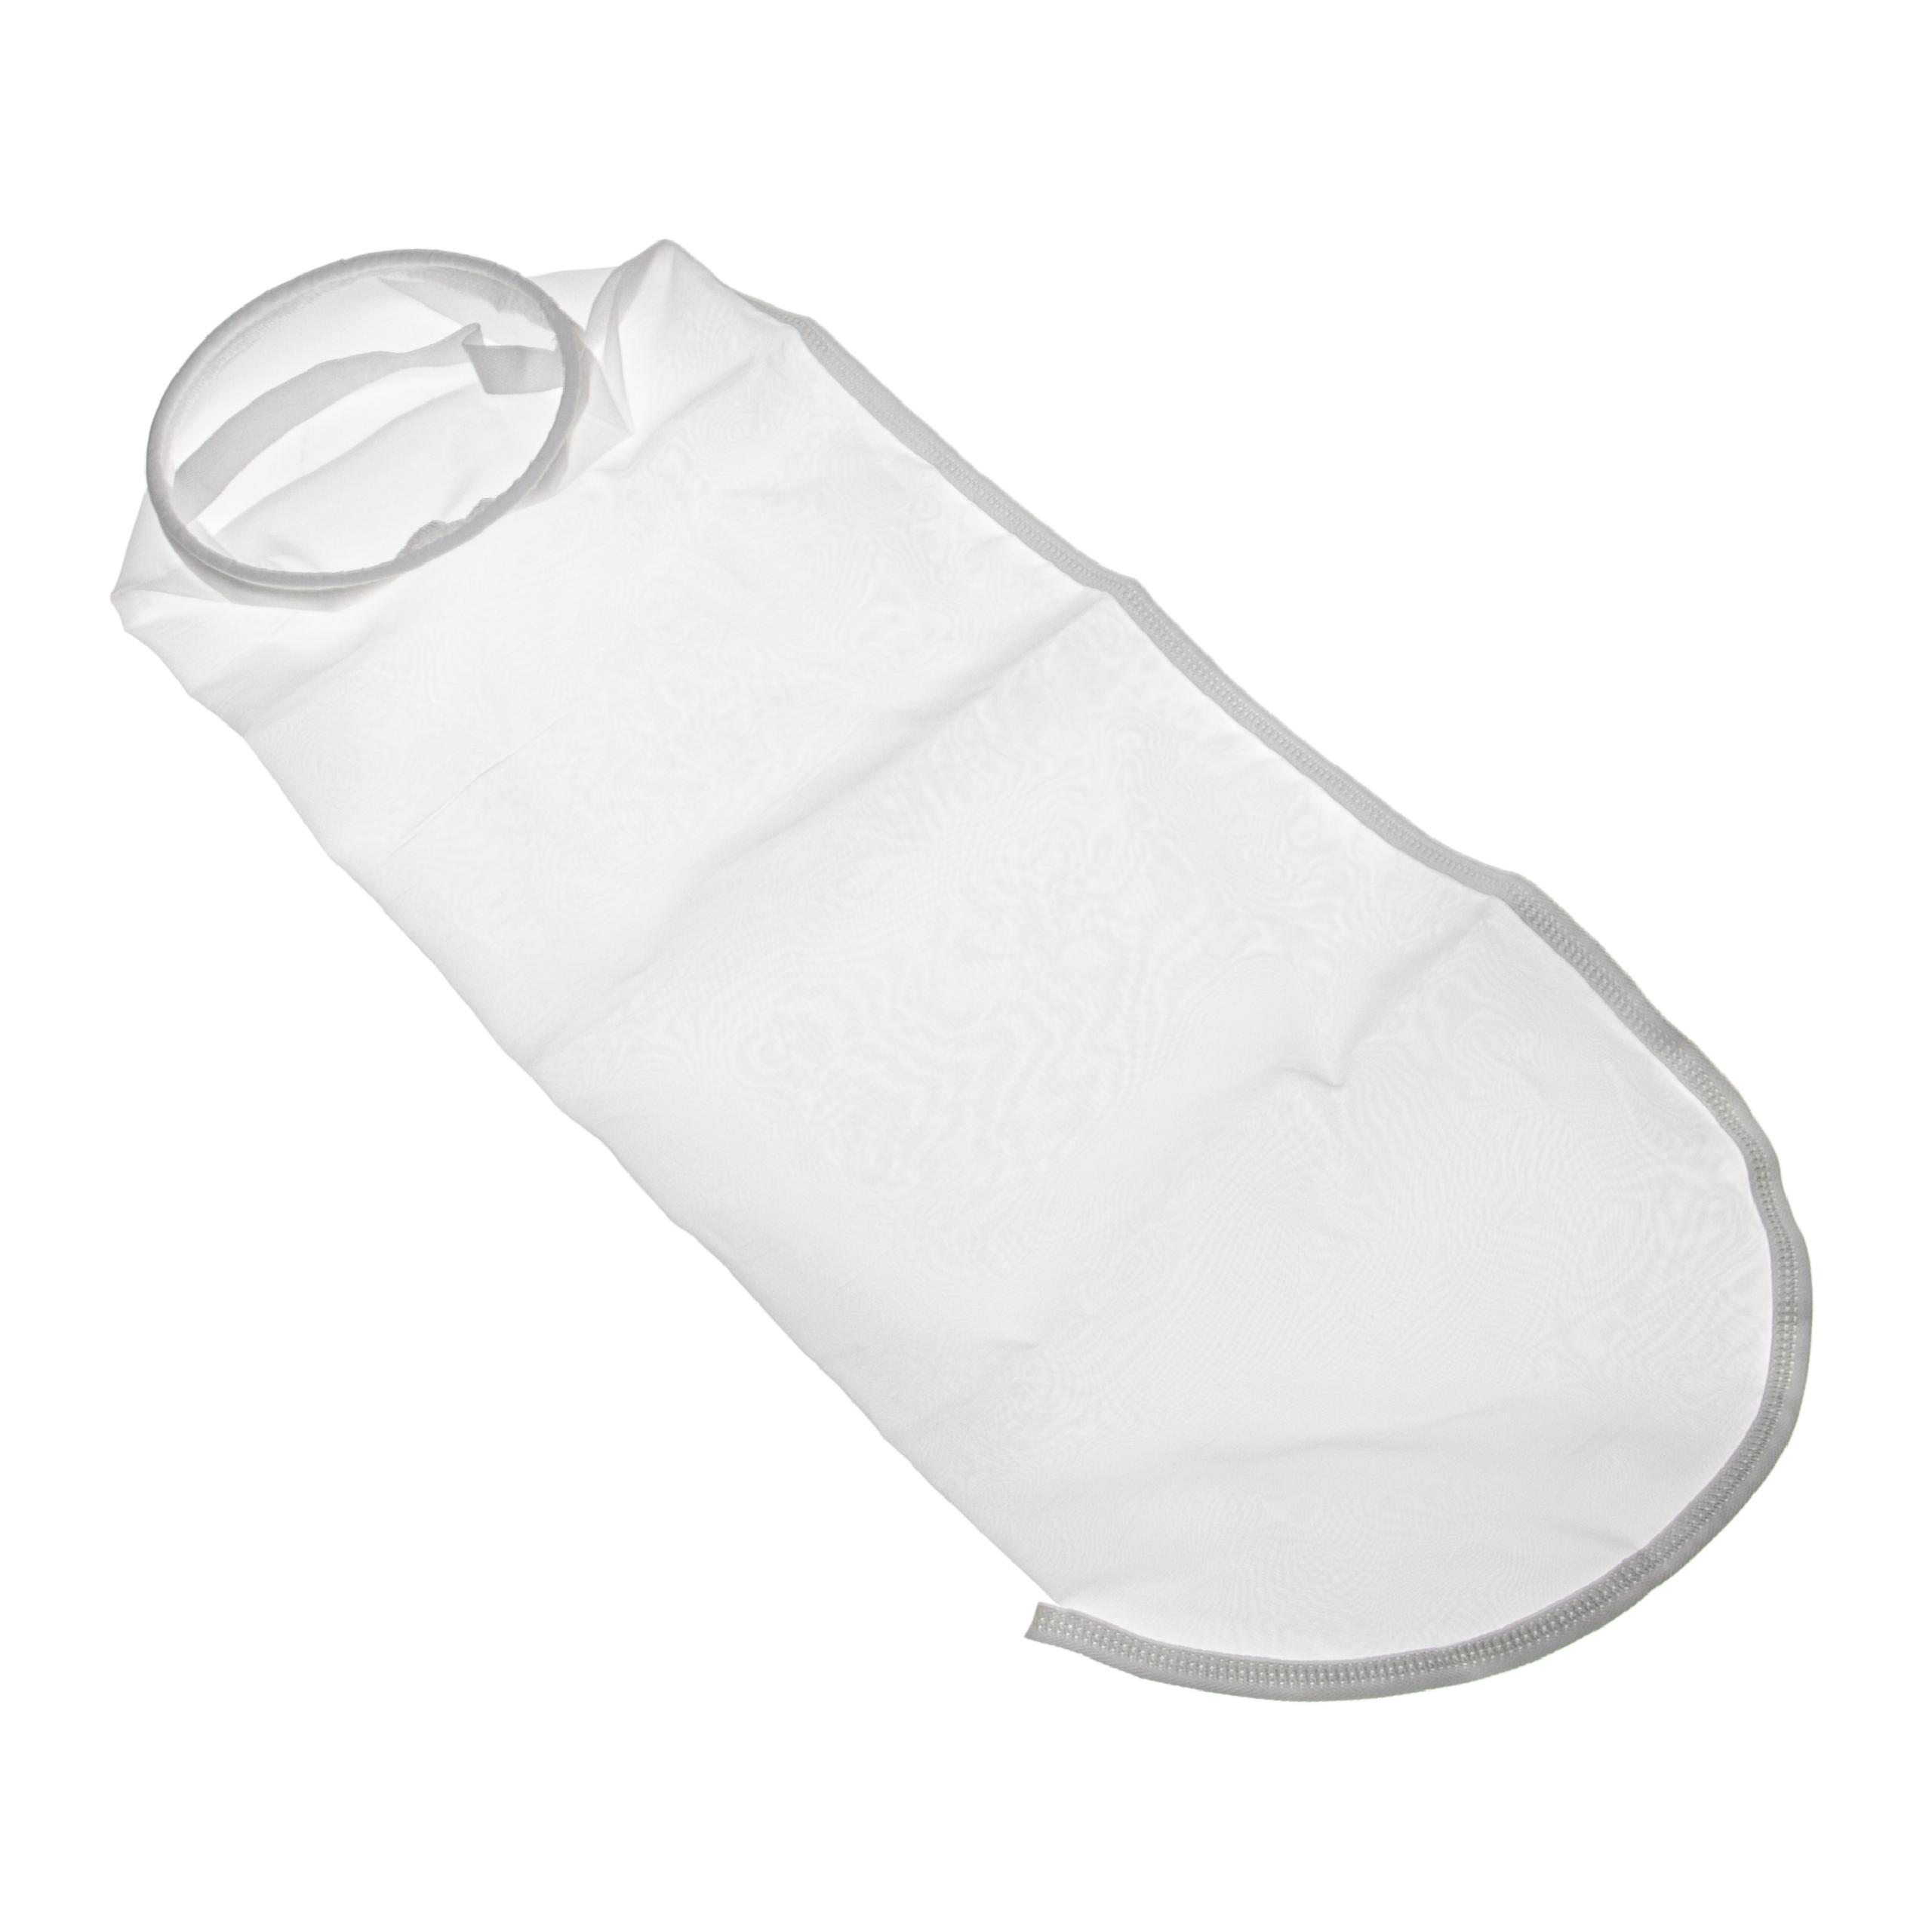 vhbw calza filtrante universale compatibile con acquari, piscine, skimmer - Sacchetto filtrante, nylon, 18 x 8